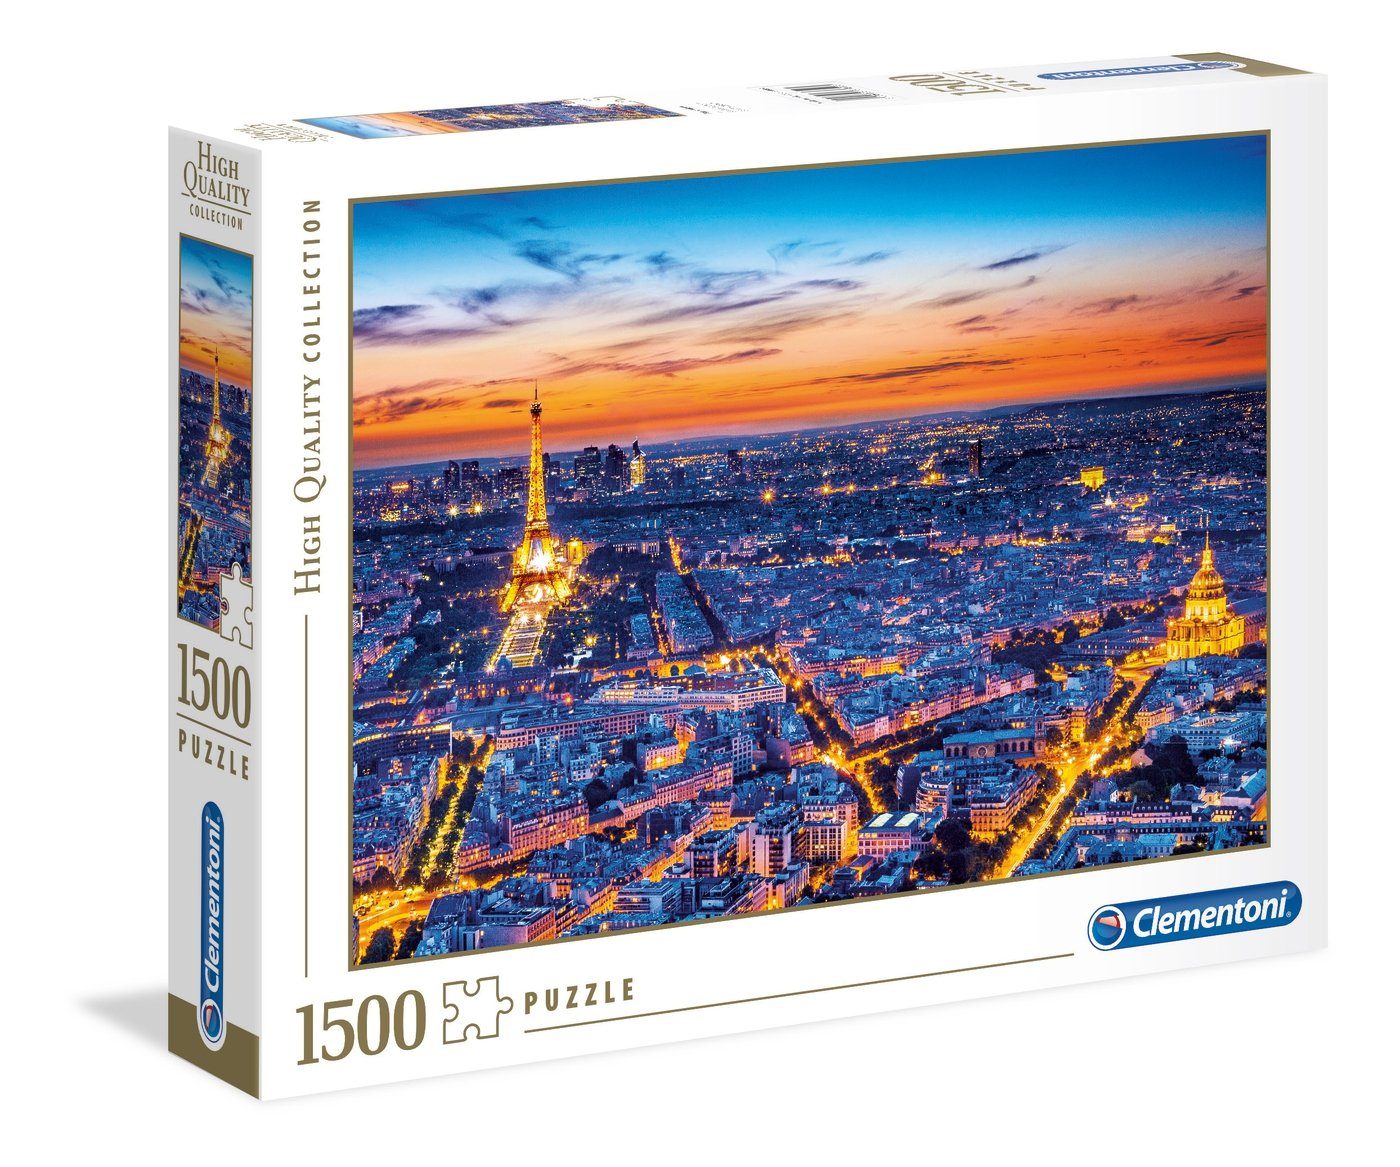 Clementoni® Puzzle Puzzles 1500 1500 Clem-31815, Puzzleteile Teile